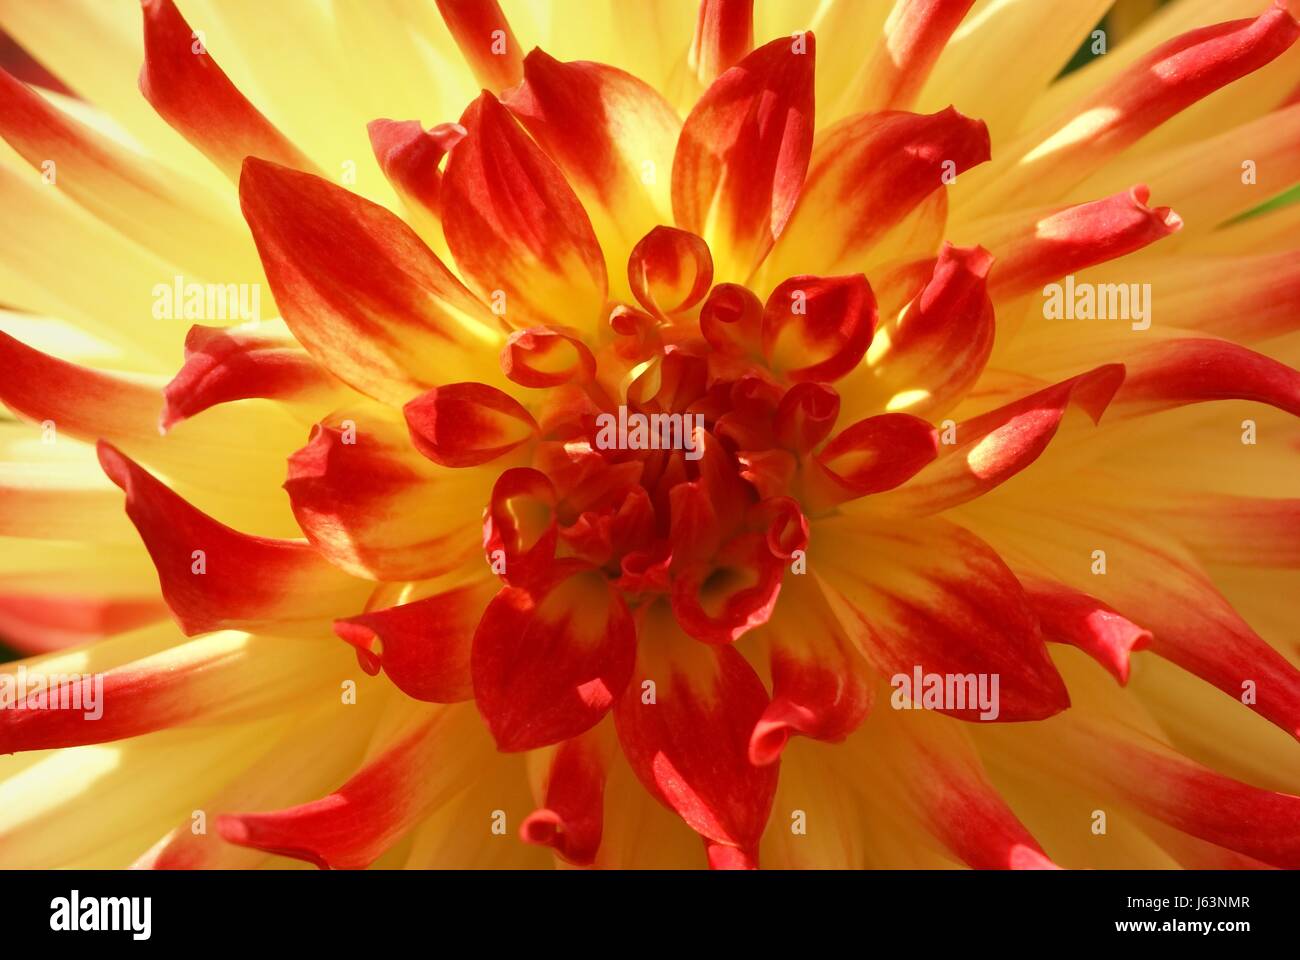 dahlias macro yellow red semi cactus Stock Photo